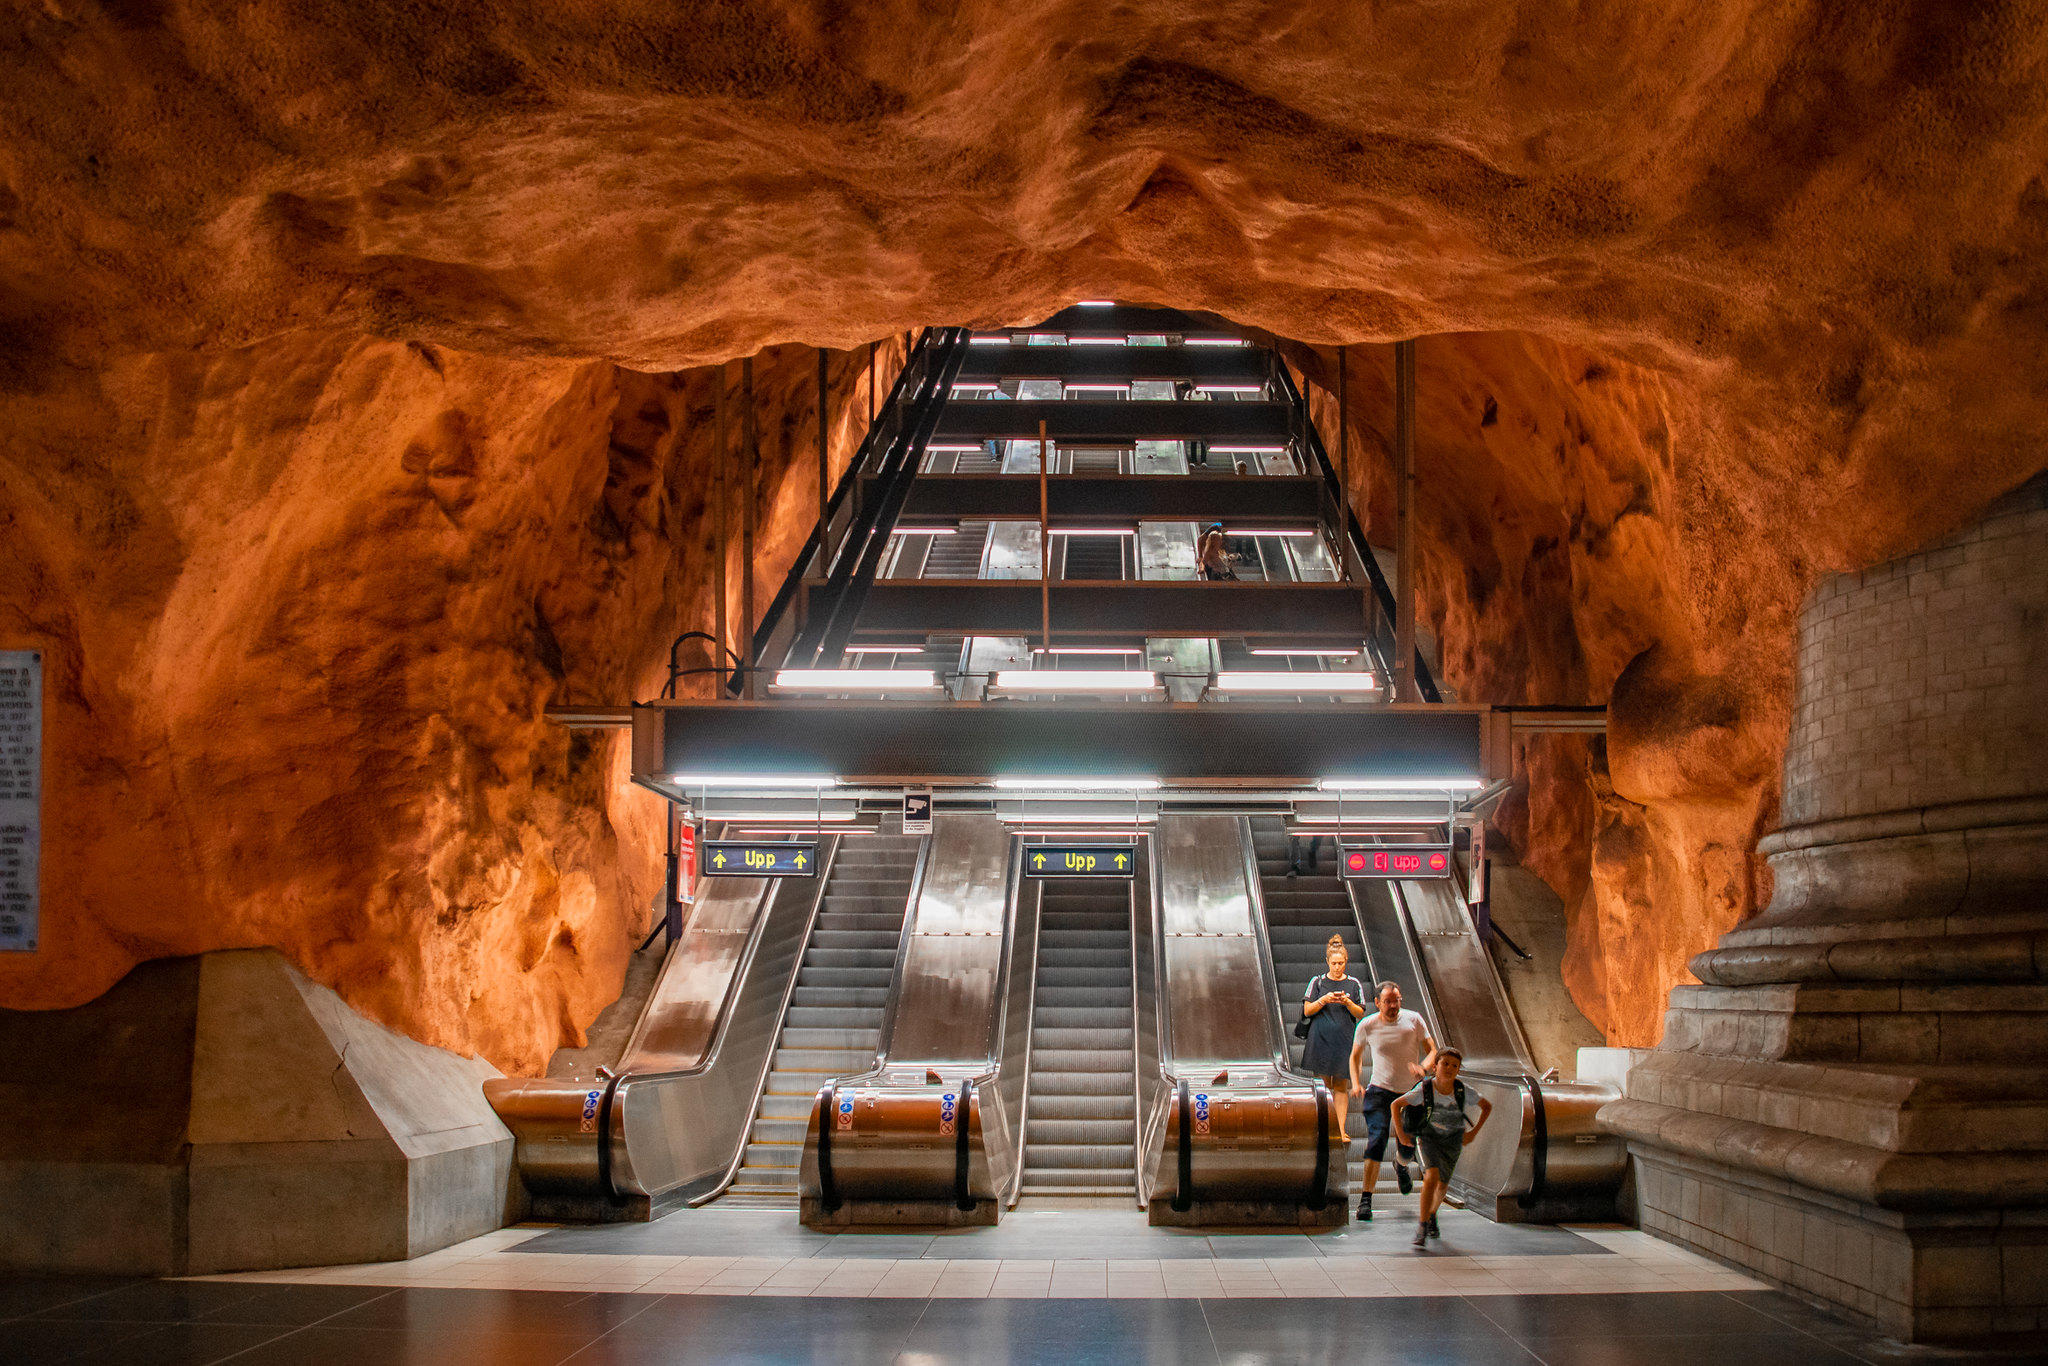 Rådhuset metropolitana di Stoccolma